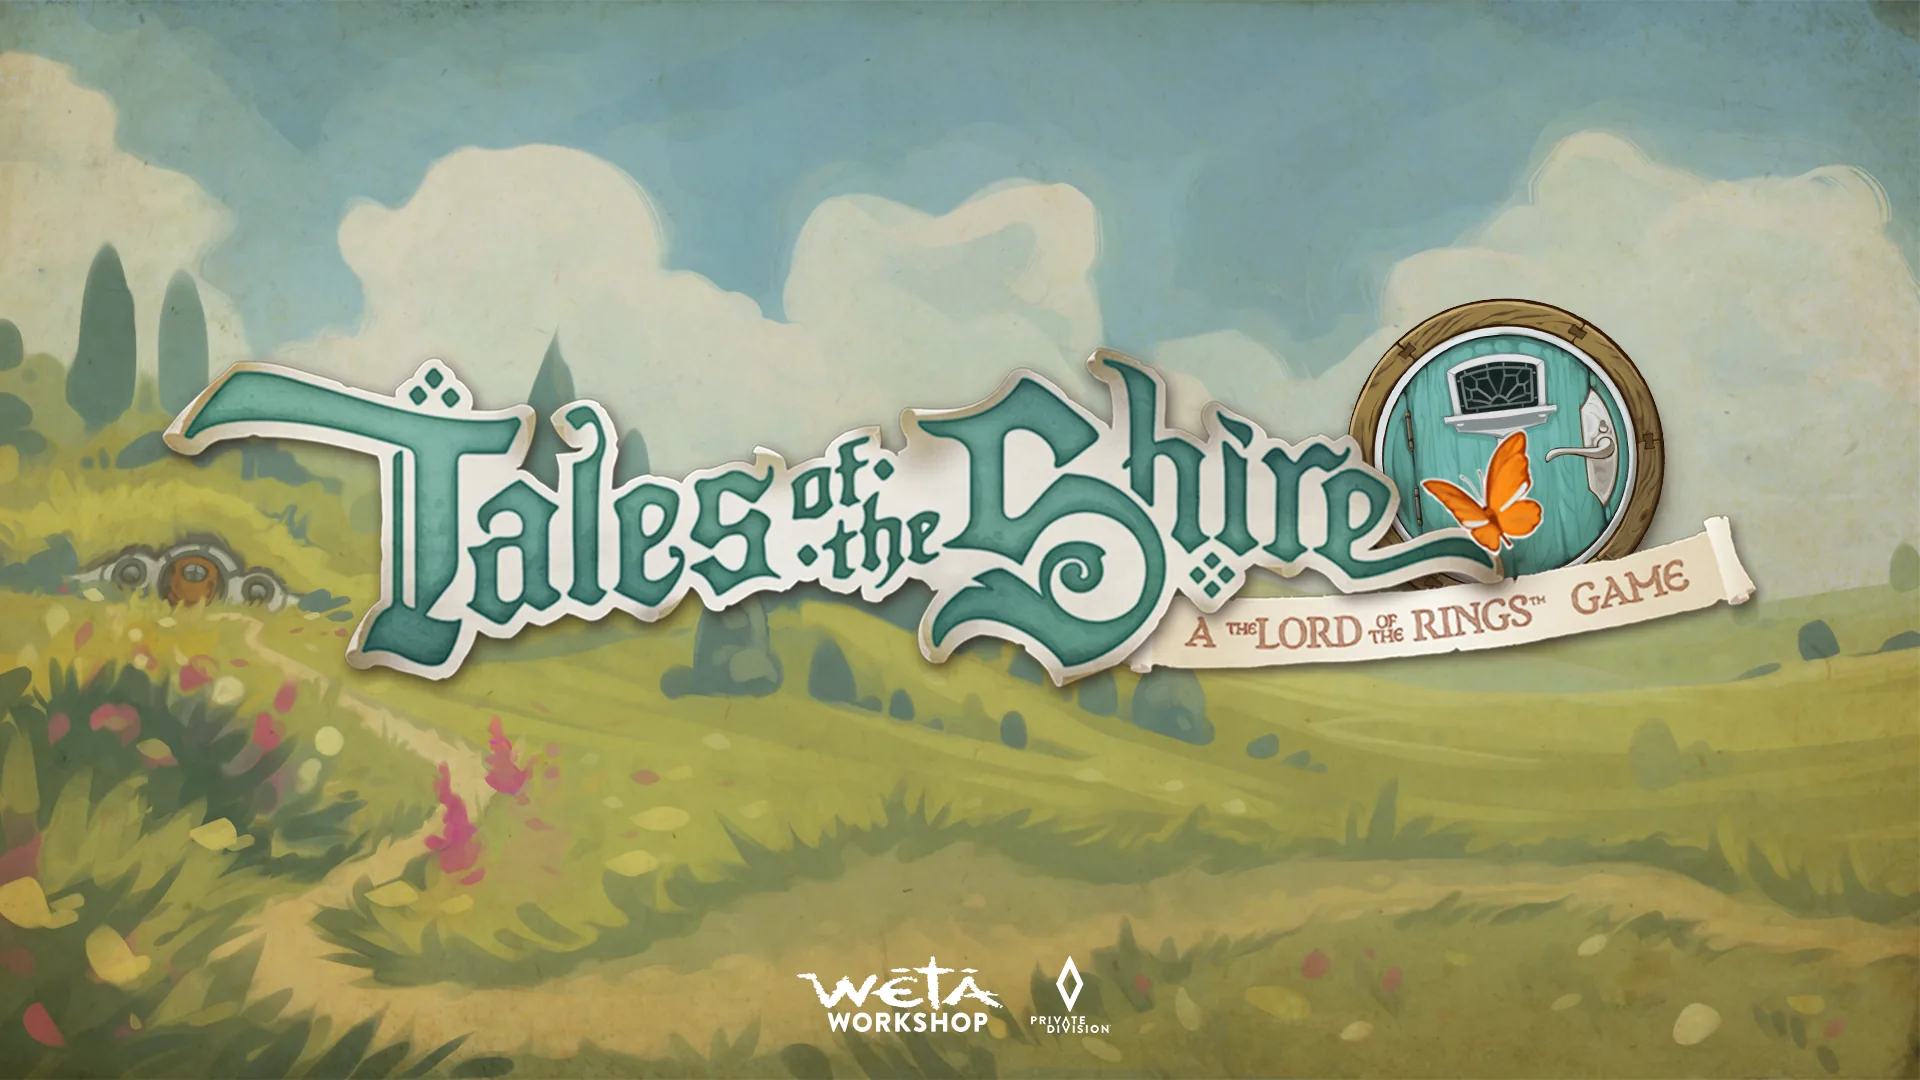 Tales of the Shire: il trailer del gioco de Il Signore degli Anelli è imminente!